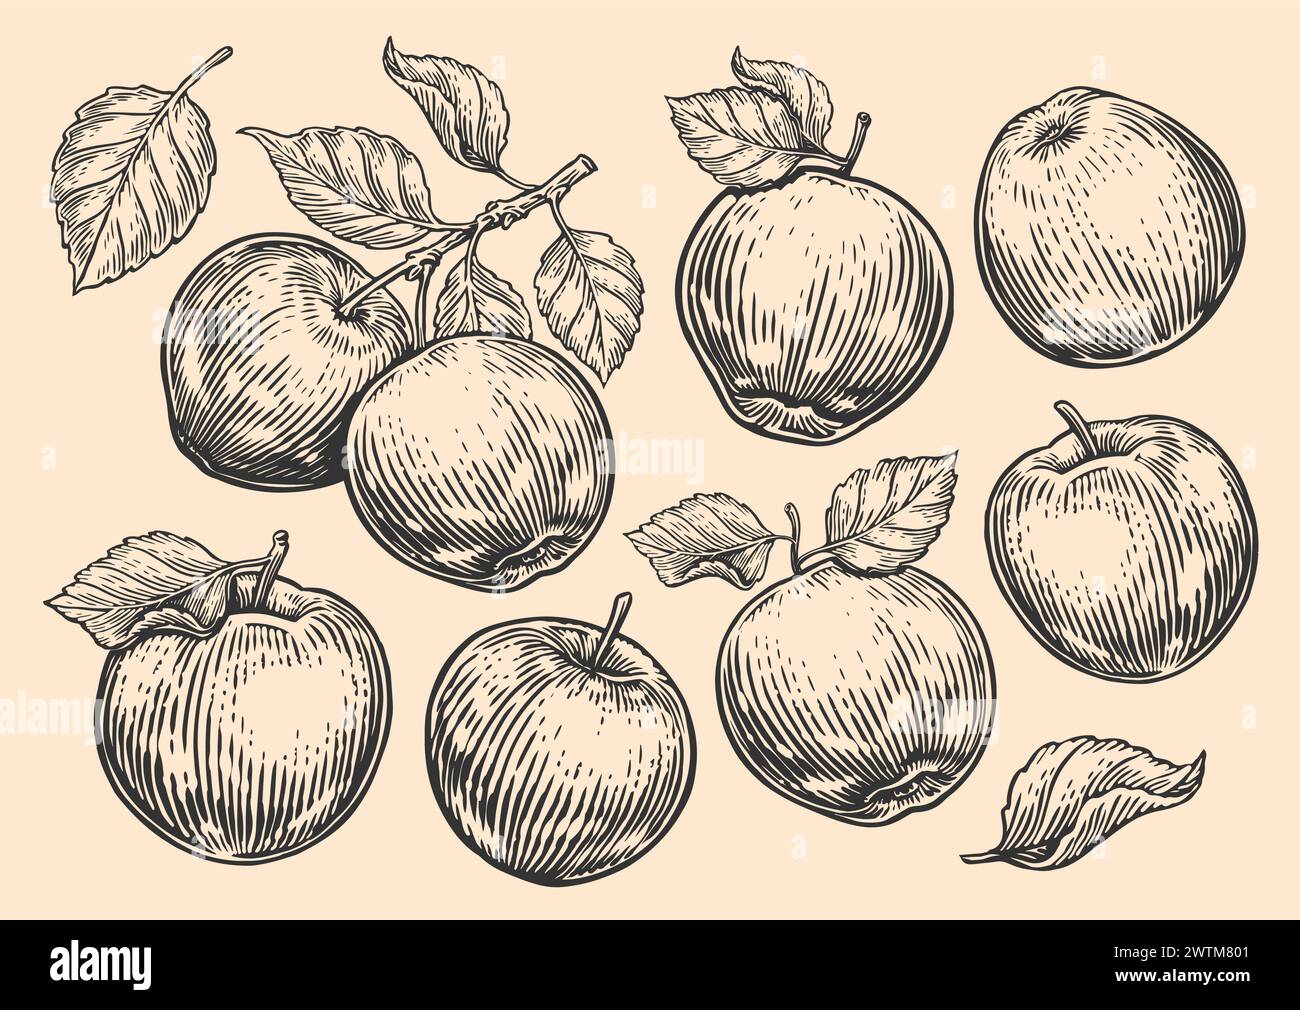 Apfelset, Früchte und Blätter. Handgezeichneter Baumzweig mit Äpfeln. Gravurstil. Abbildung der Vektorskizze Stock Vektor